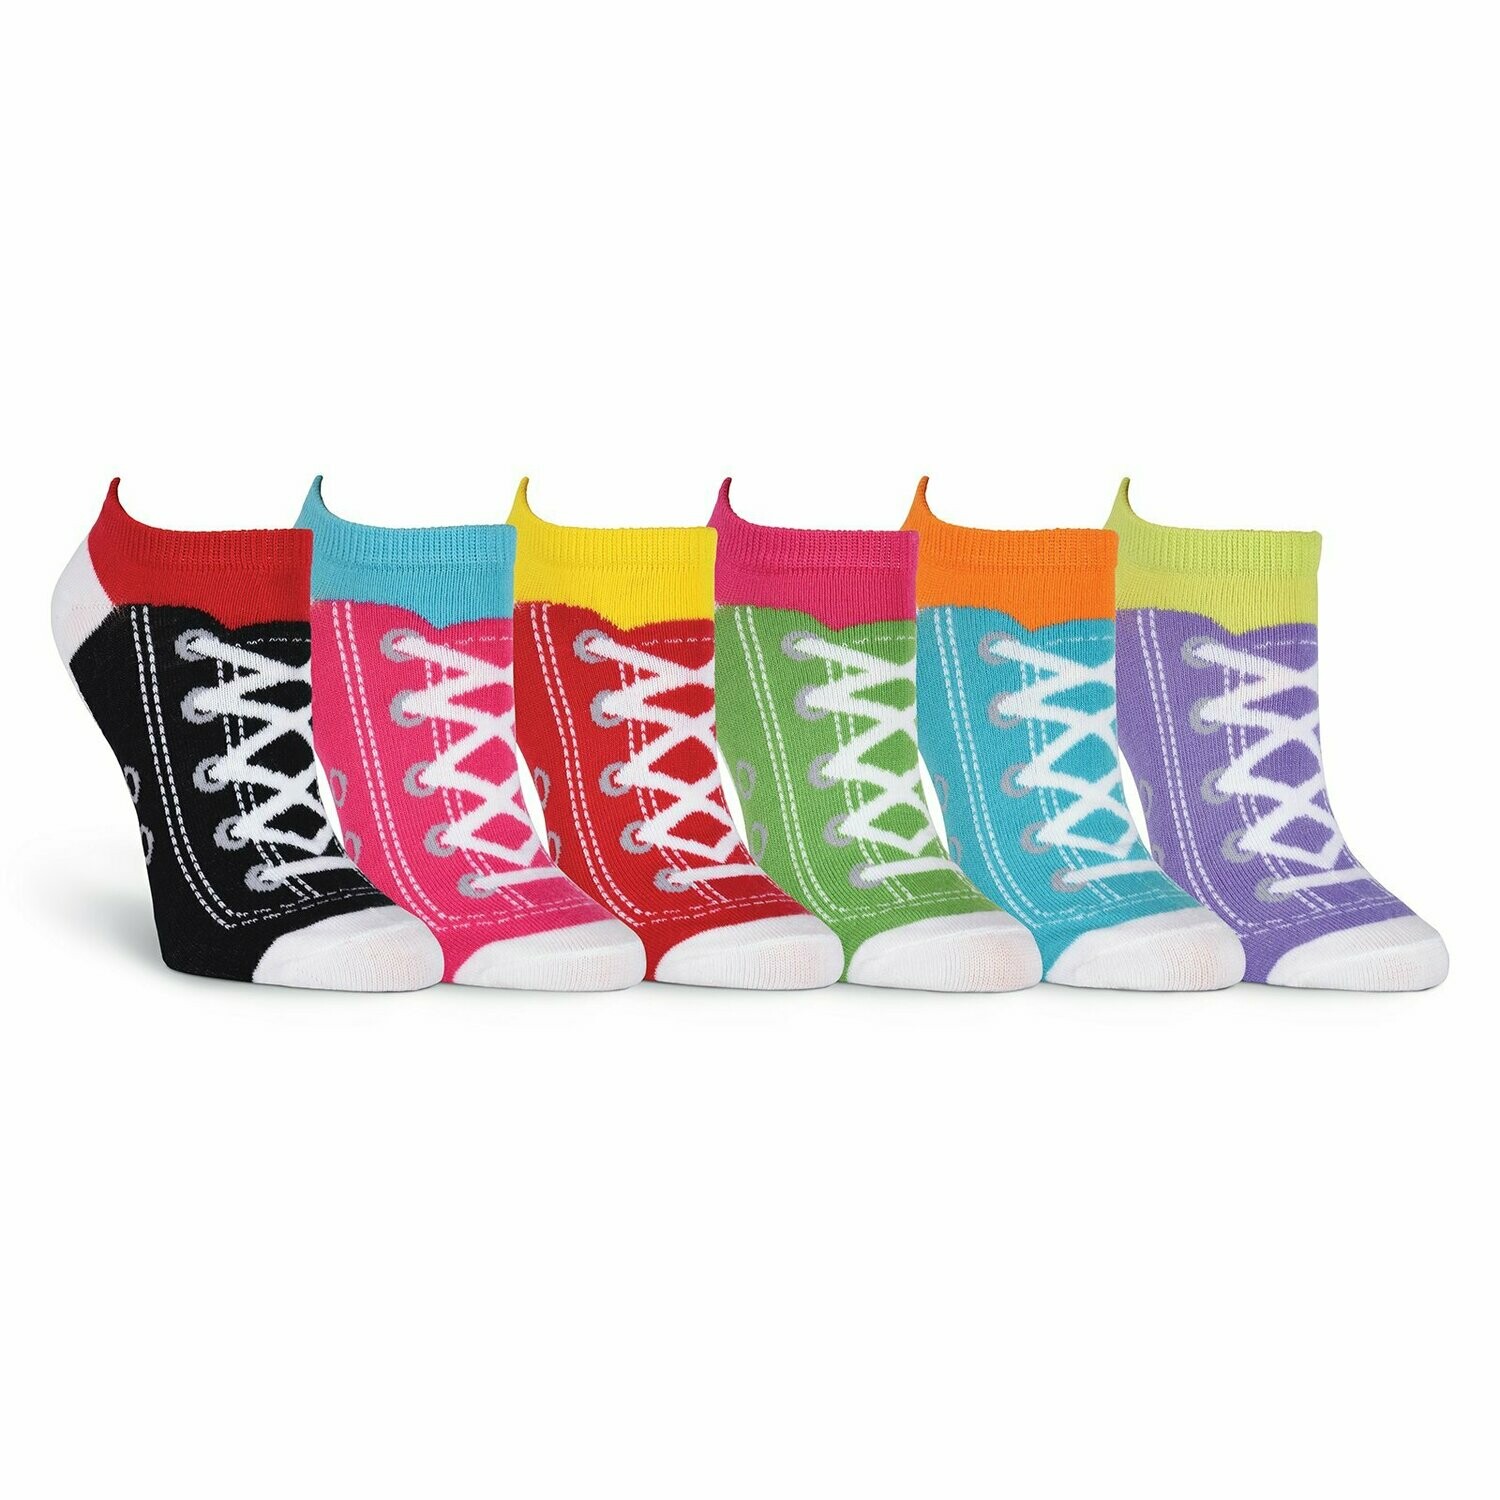 Women's Sneakers Ankle Socks Six Pair Pack